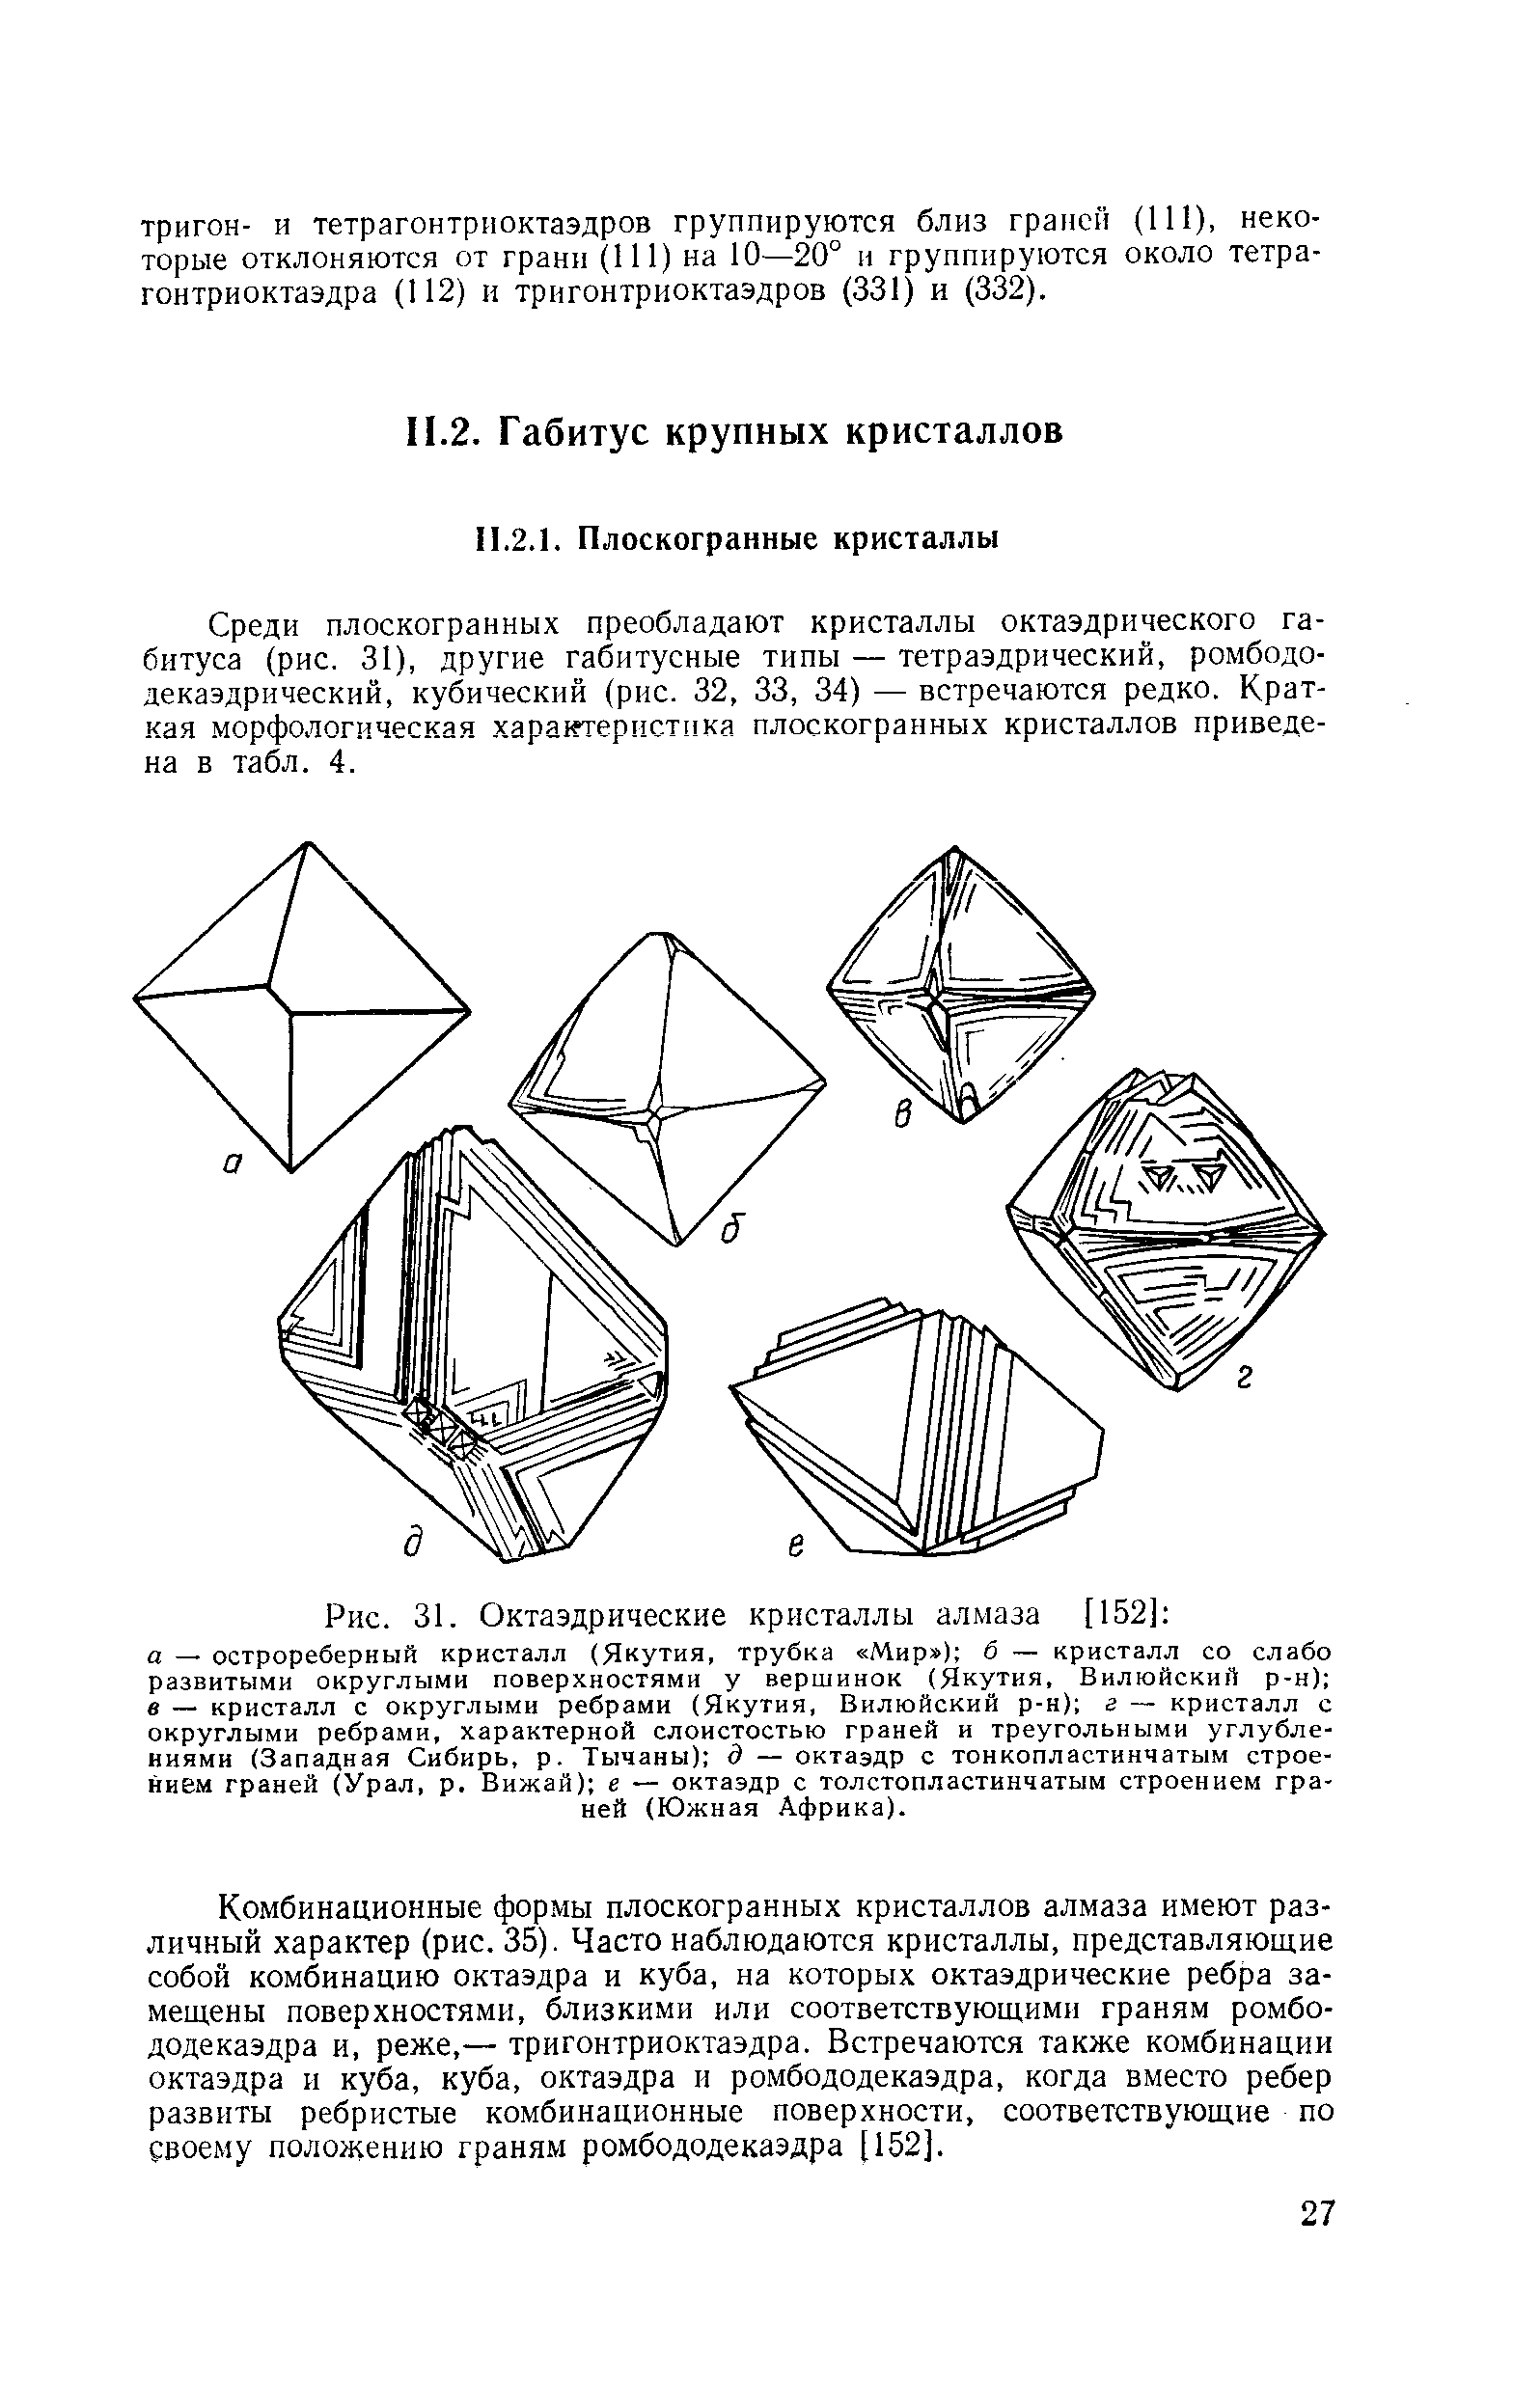 Среди плоскогранных преобладают кристаллы октаэдрического габитуса (рис. 31), другие габитусные типы — тетраэдрический, ромбодо-декаэдрический, кубический (рис. 32, 33, 34) — встречаются редко. Краткая морфологическая характеристика плоскогранных кристаллов приведена в табл. 4.